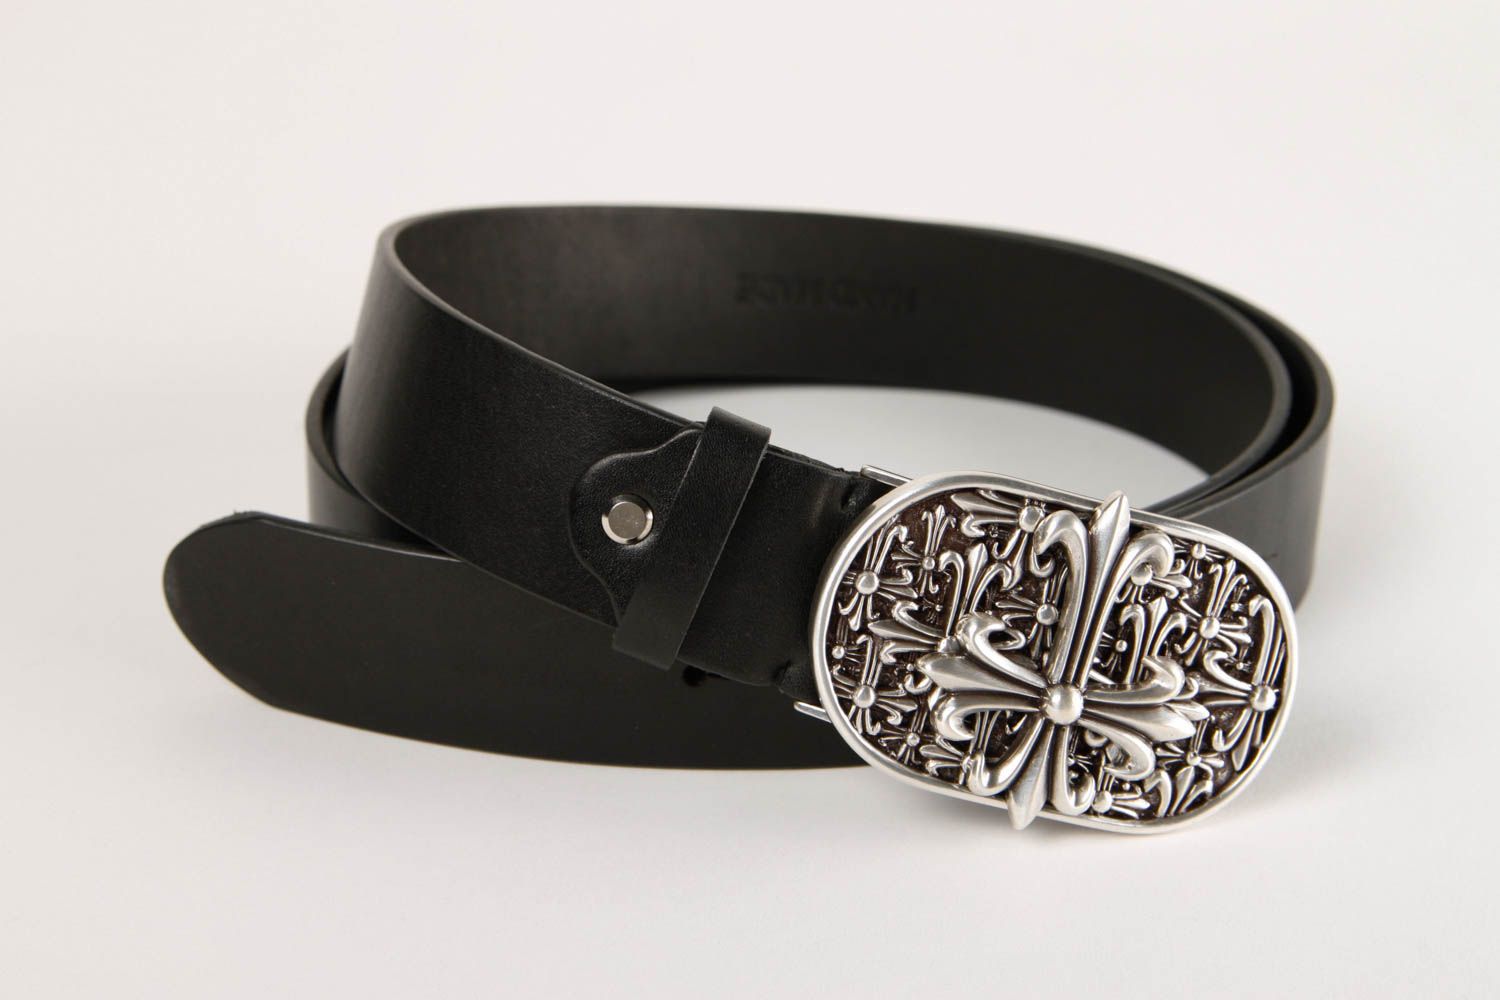 Handmade belt for men gift ideas leather black belt handmade gift ideas photo 3